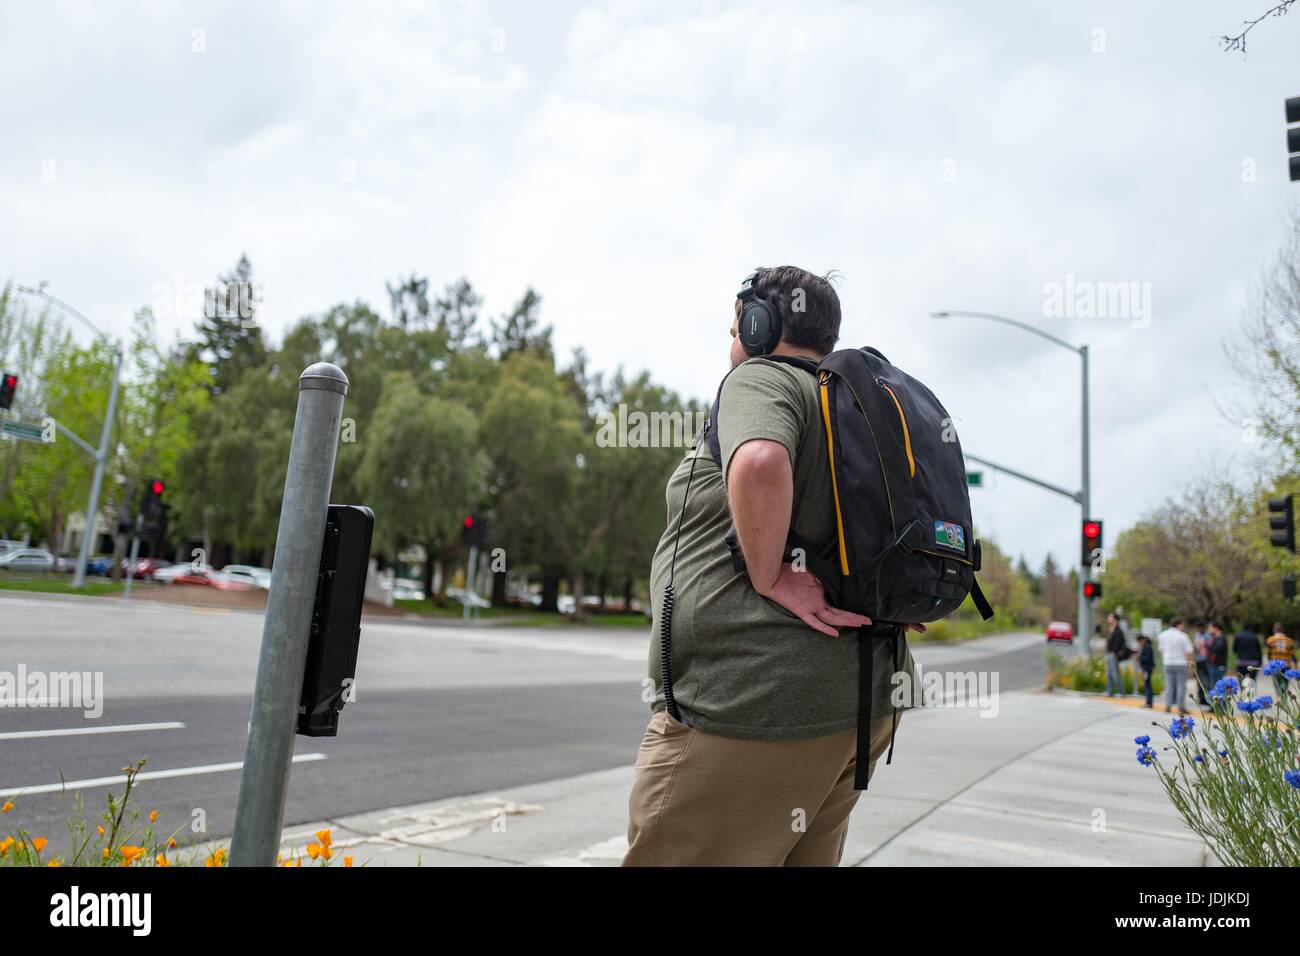 Ein Junge männliche Technologie Arbeiter, tragen, Kopfhörer und einem Rucksack steht an einer Kreuzung im Googleplex, das Silicon Valley-Hauptquartier der Search Engine und Technologie Unternehmen Google Inc., Mountain View, Kalifornien, 7. April 2017. Stockfoto